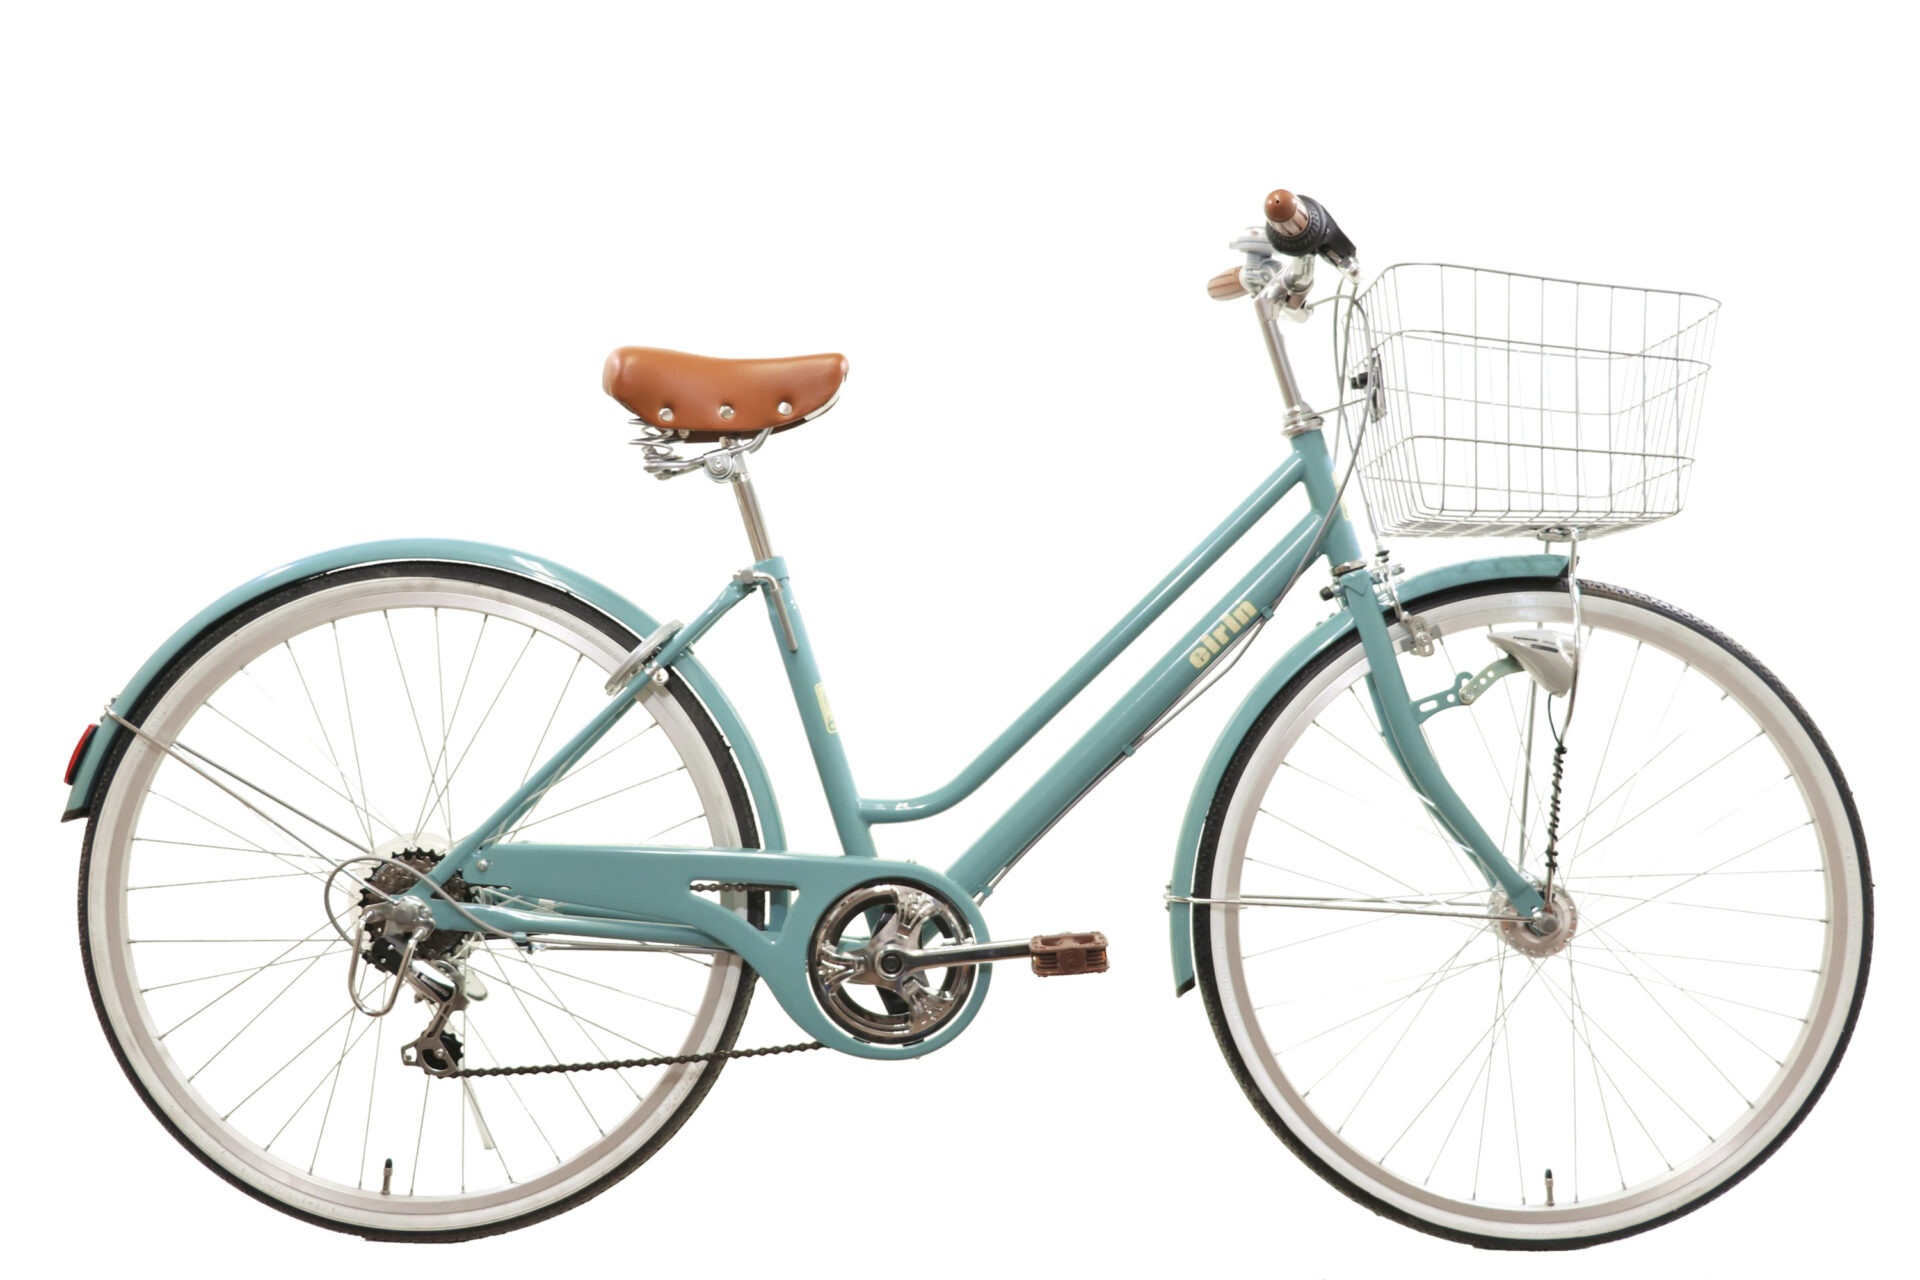 女性の新生活スタートにばっちりな可愛いくて乗りやすい自転車 19年モデルエイリンオリジナル Ay266bnrol をご紹介 京都の中古自転車 新車販売 サイクルショップ エイリン